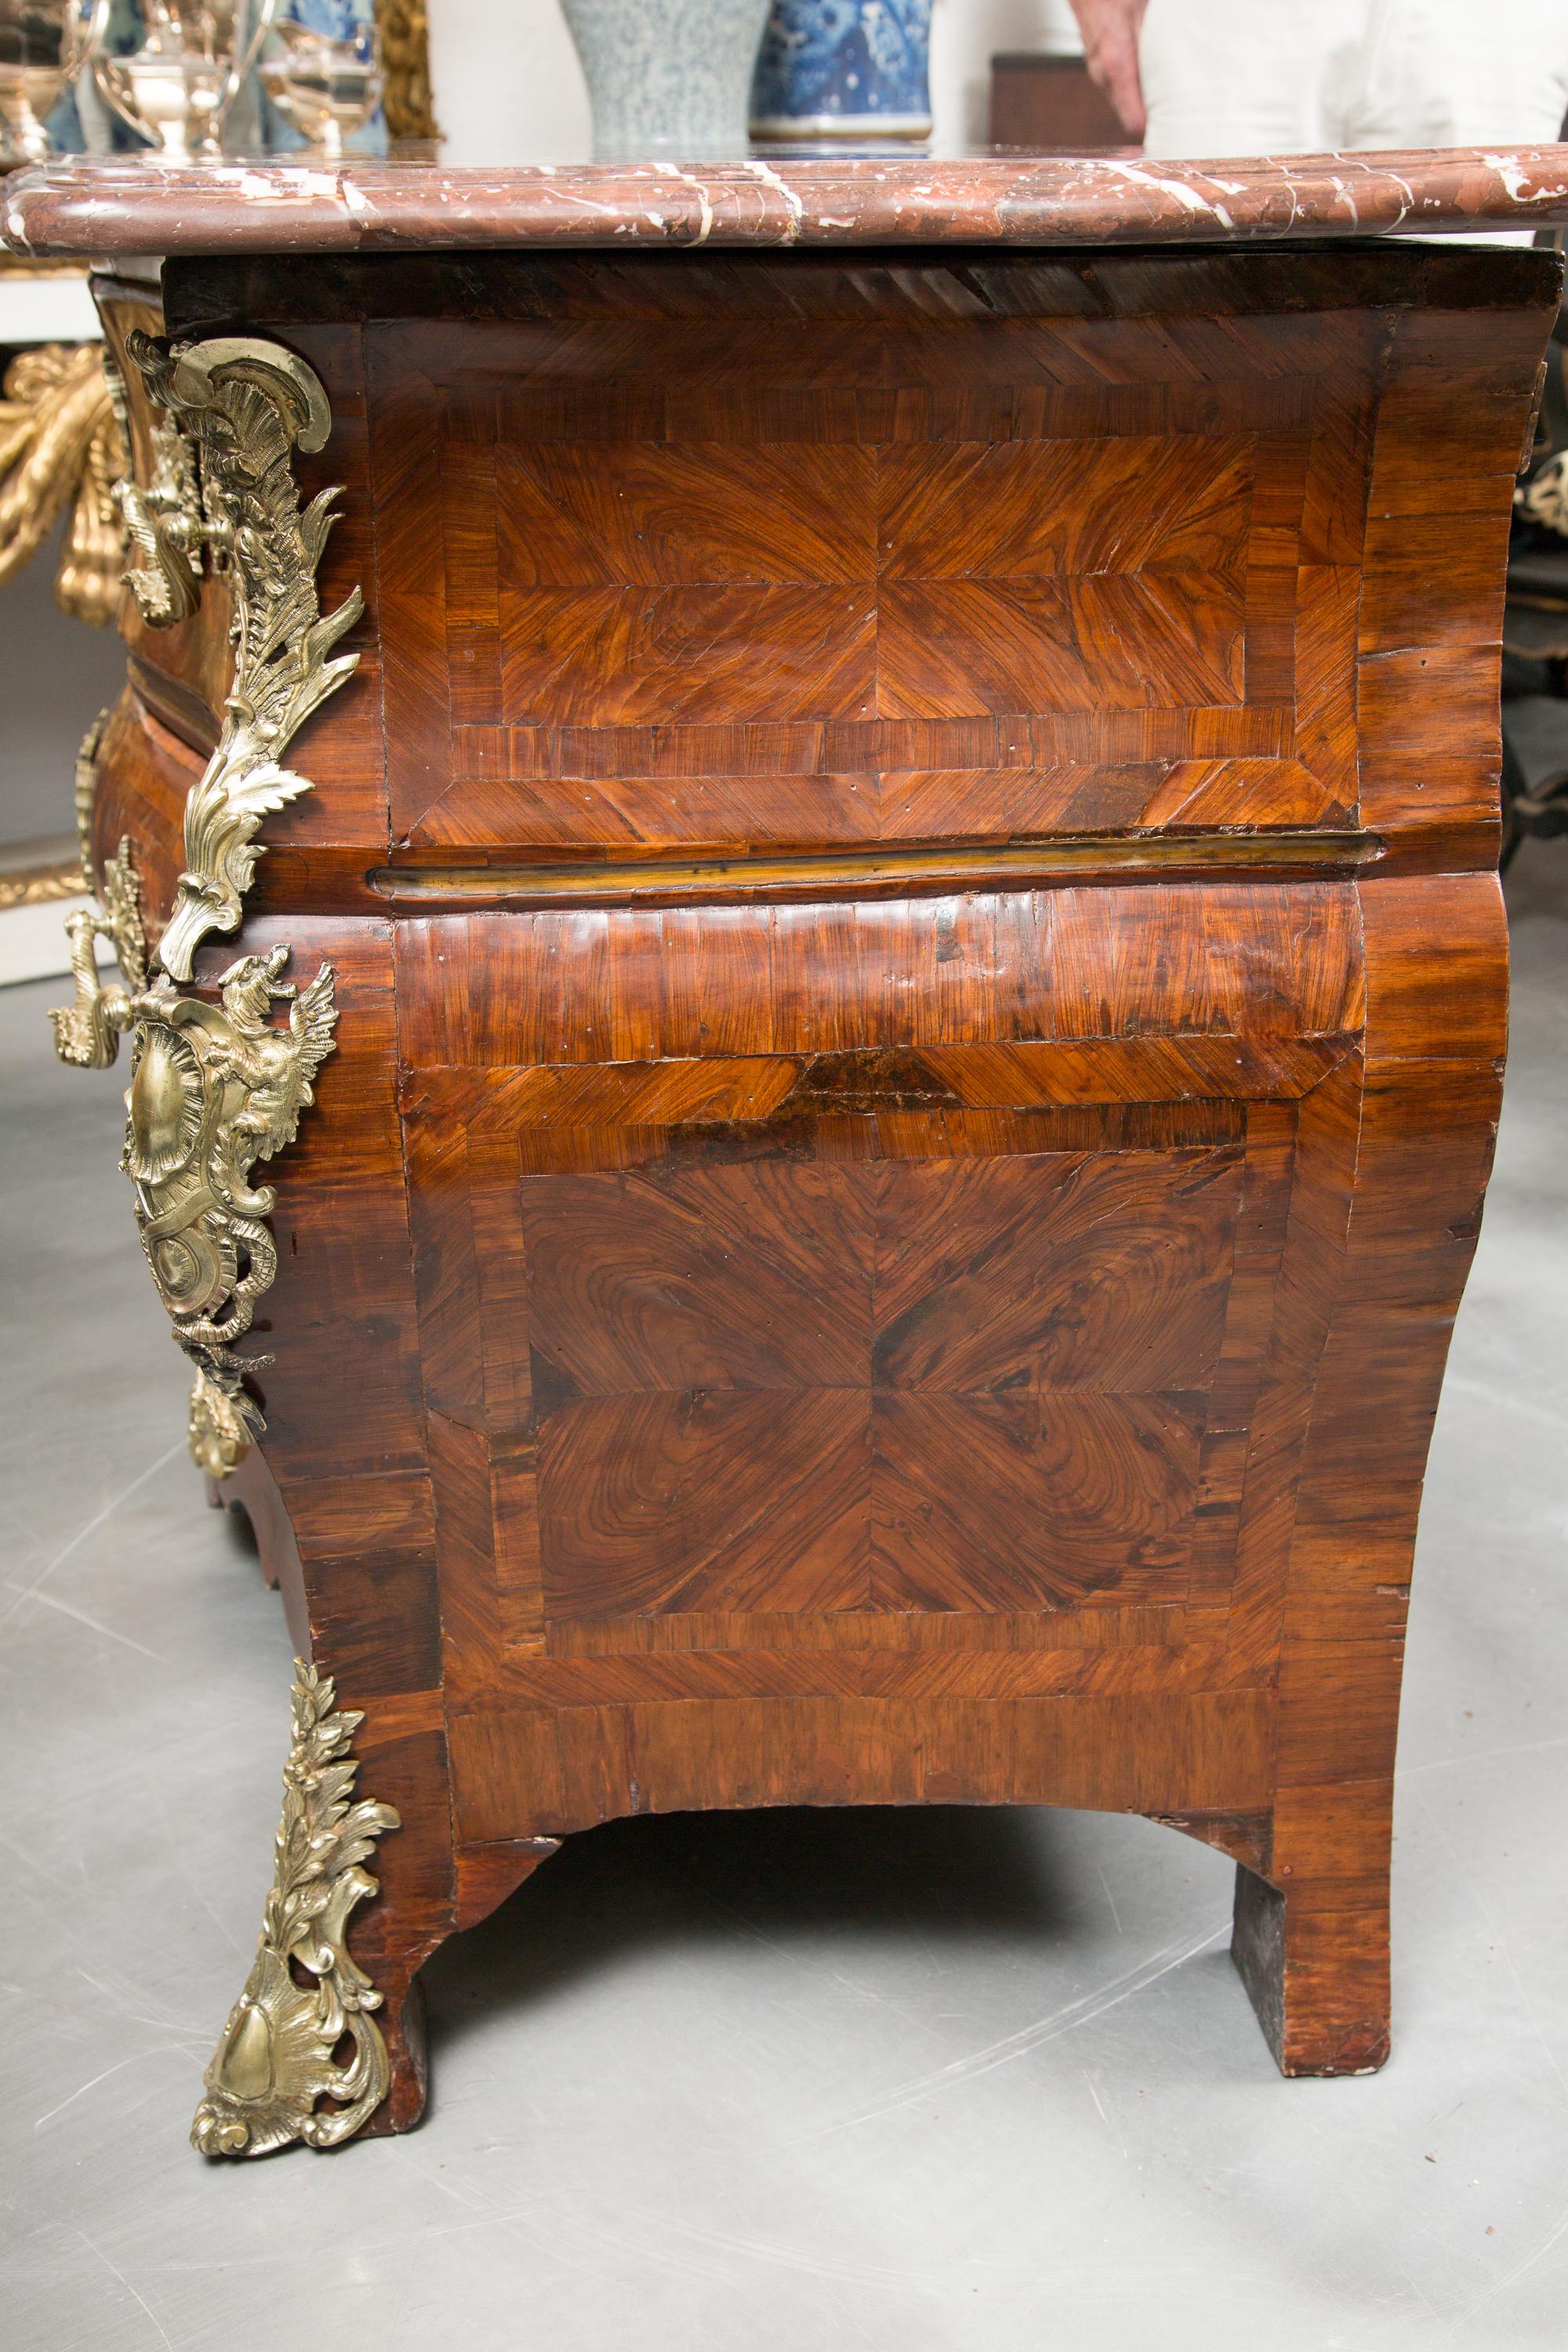 Dies ist eine beeindruckende Kommode aus Tulipwood und Kingwood des 18. Jahrhunderts mit einer Platte aus rougefarbenem, panaschiertem Marmor über drei langen, abgestuften Schubladen und insgesamt mit verzierten Metallbeschlägen aus vergoldeter